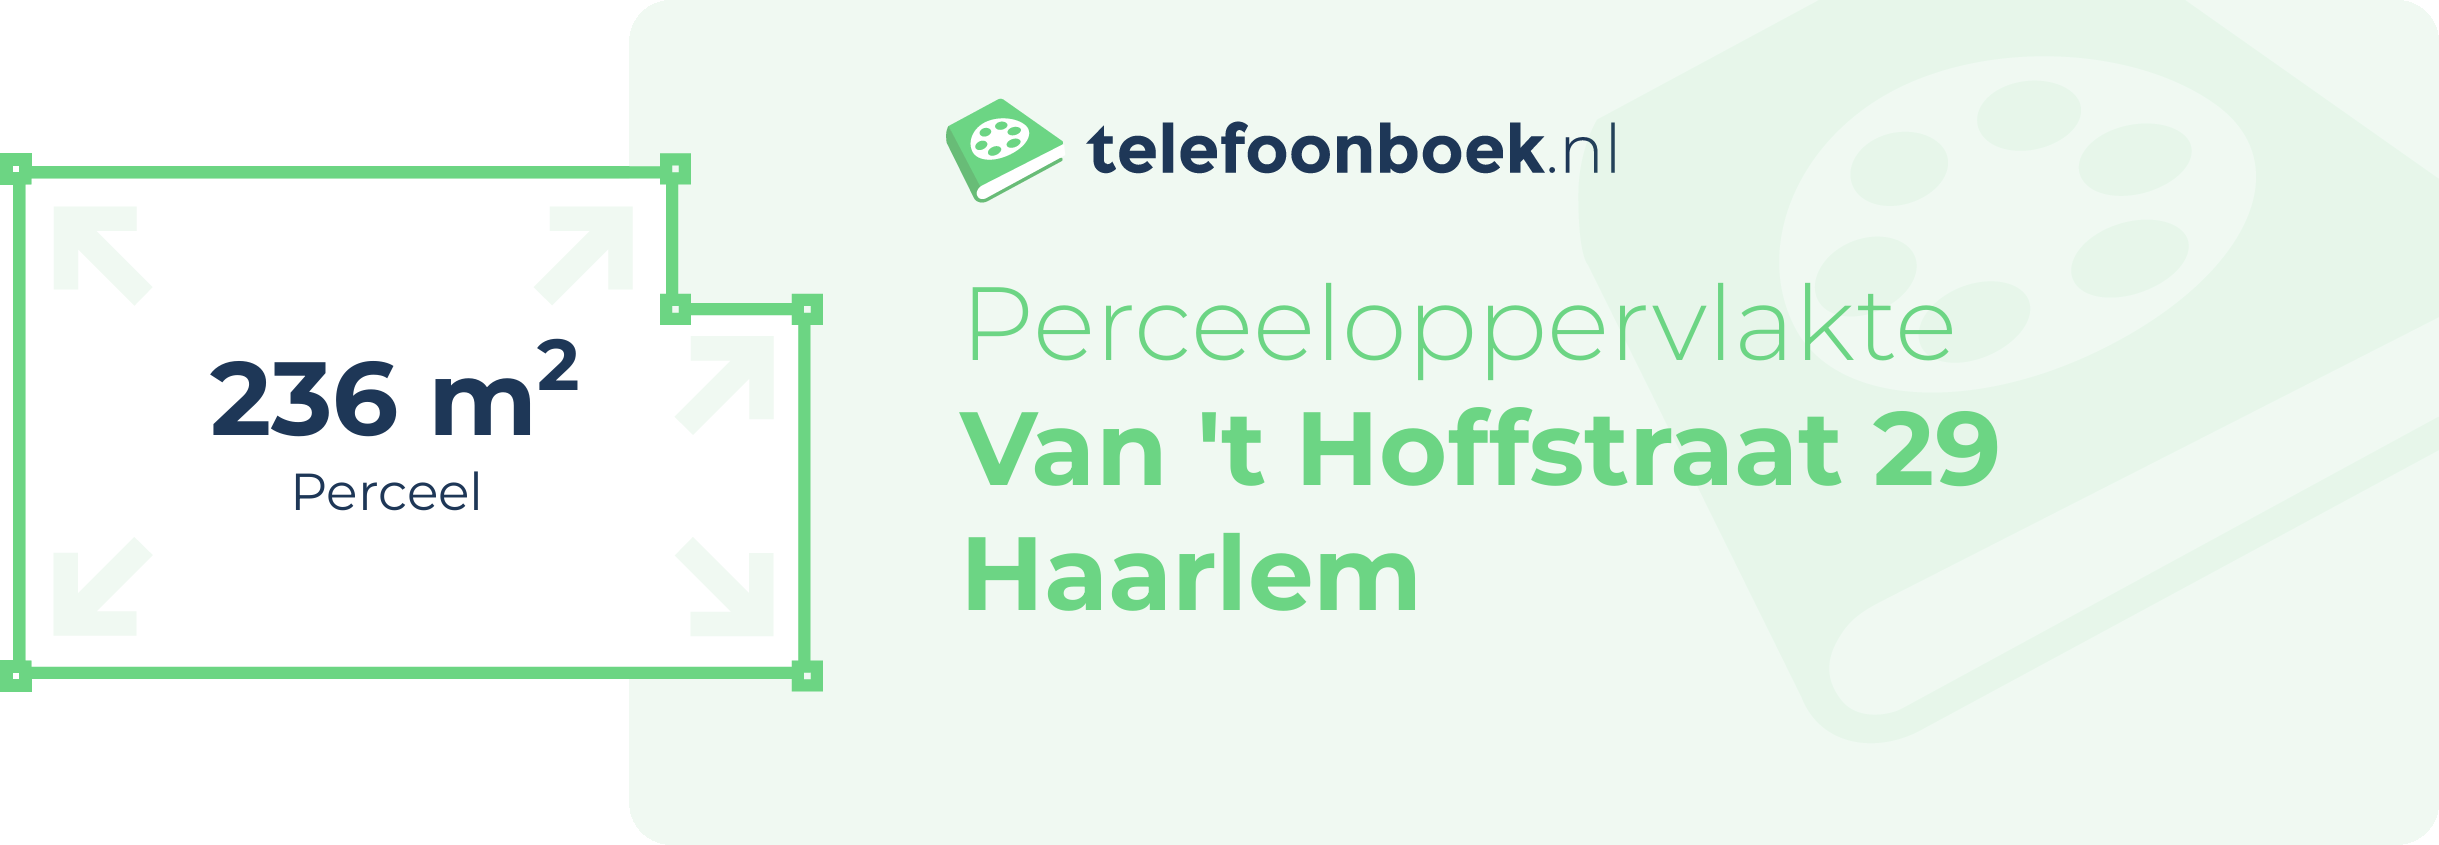 Perceeloppervlakte Van 't Hoffstraat 29 Haarlem